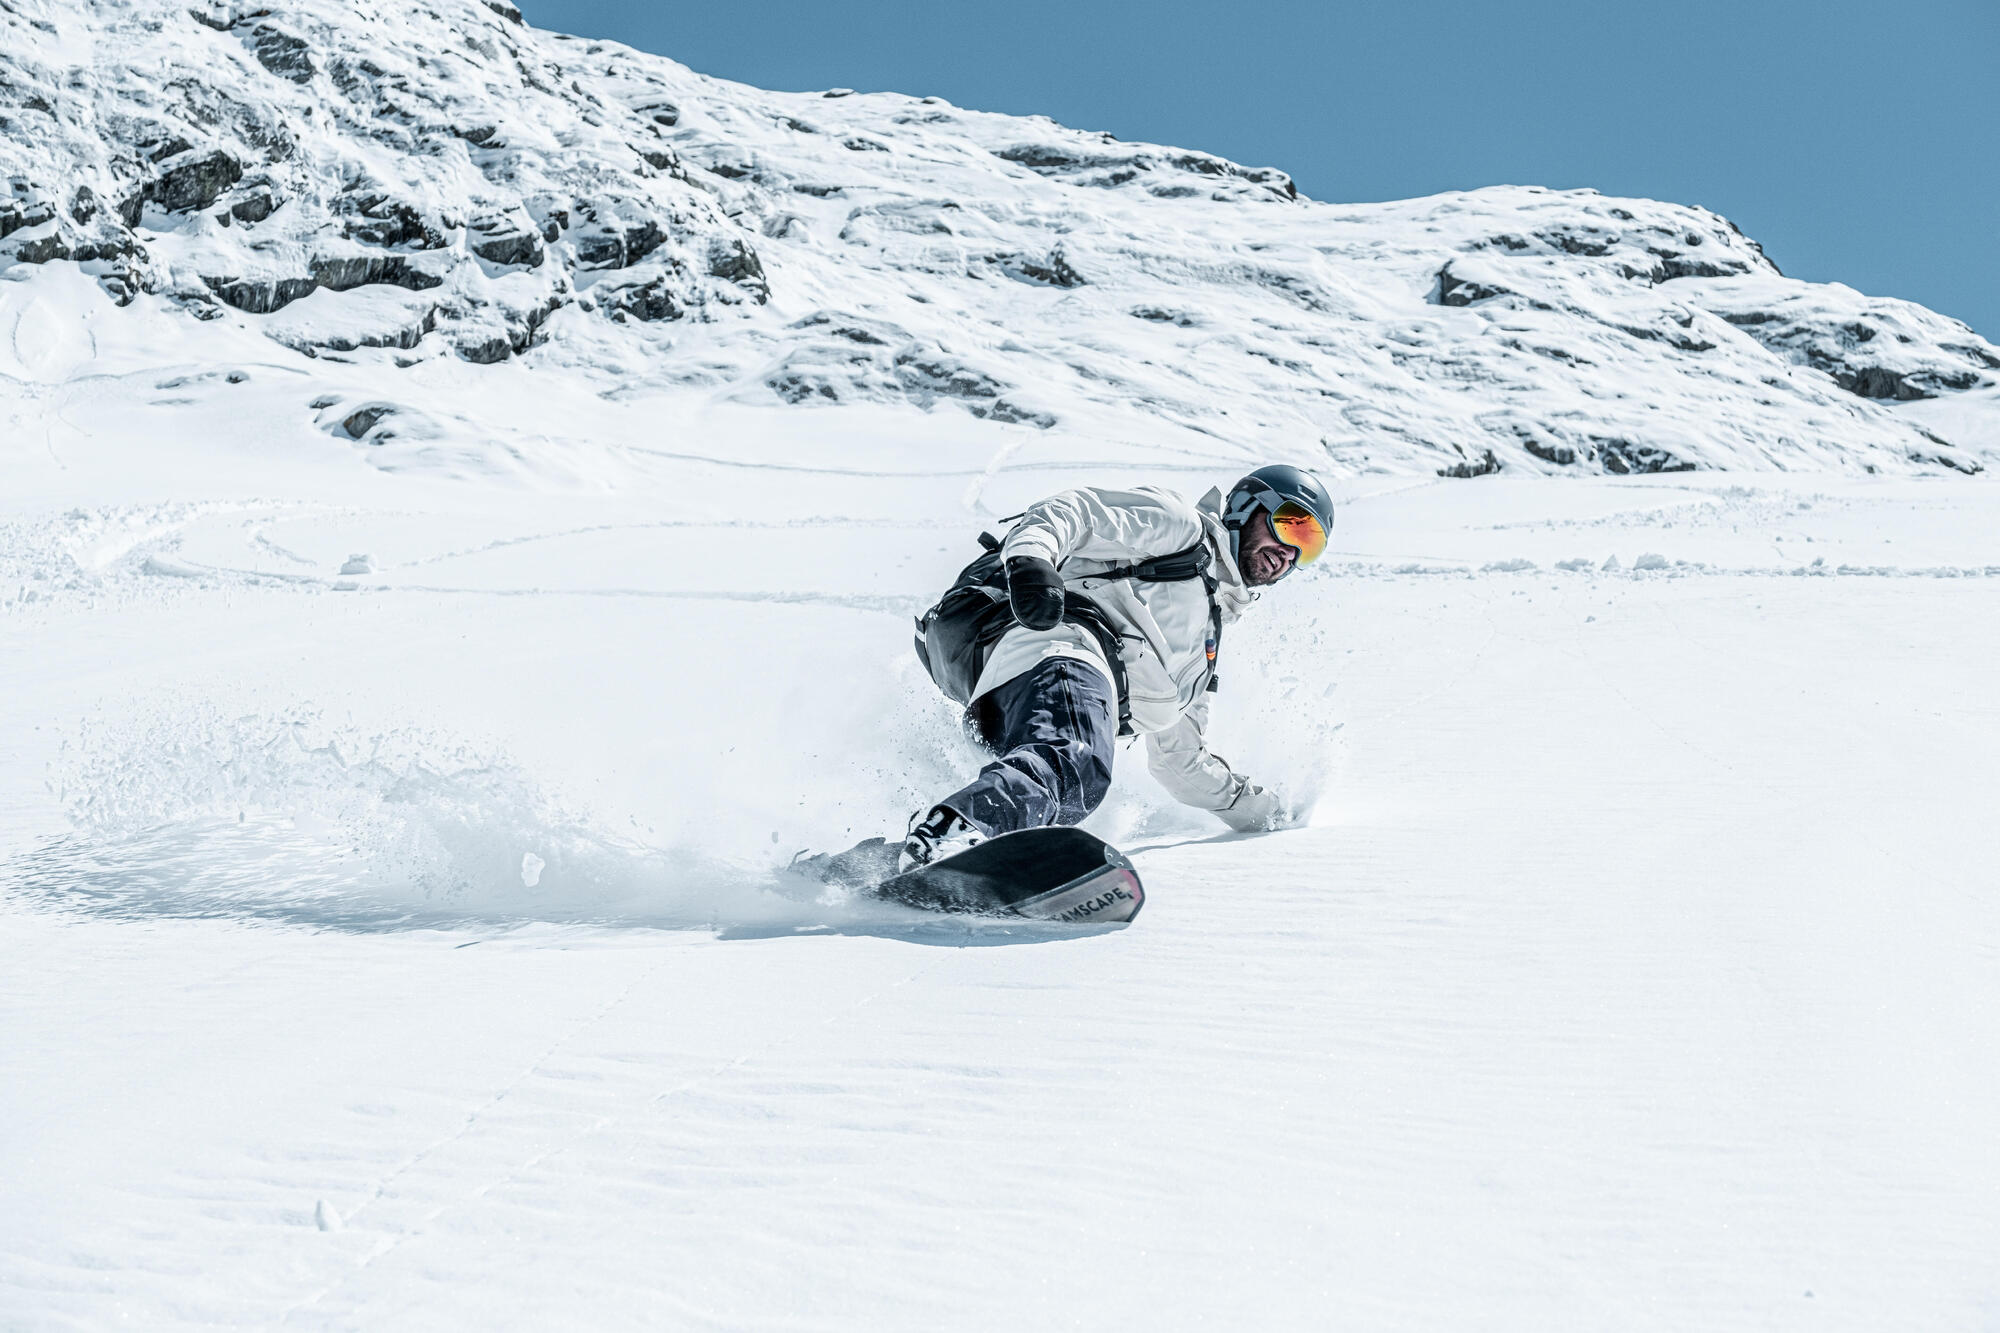 Gilet de protection dorsale VTT, ski et snowboard femme - DBCK 500